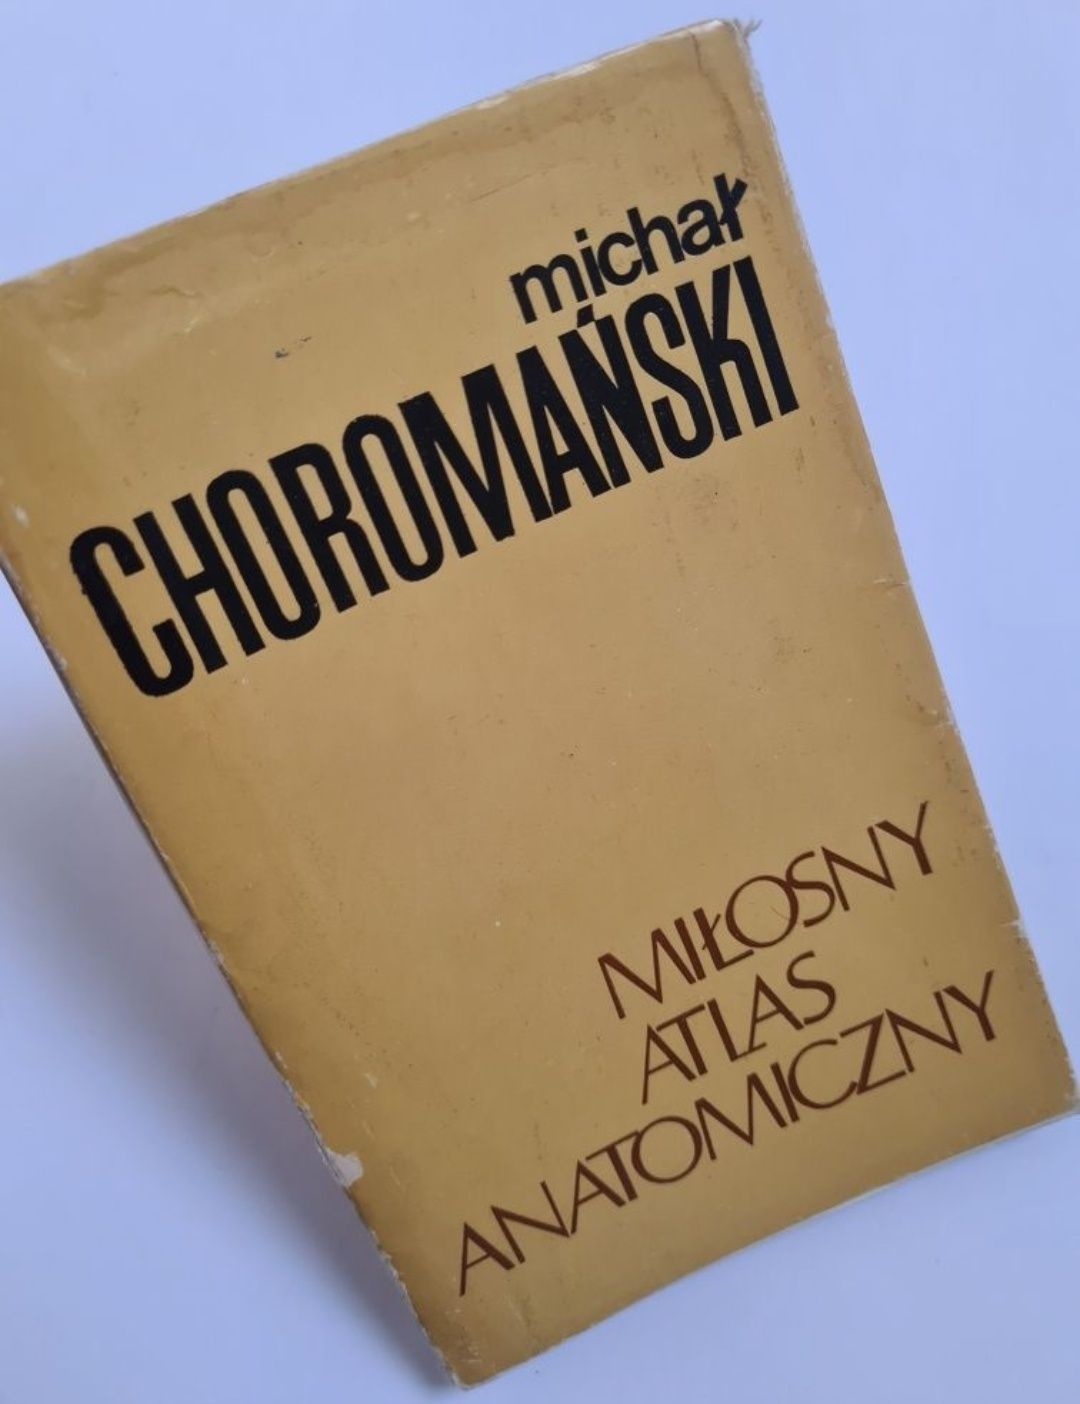 Miłosny atlas anatomiczny - Michał Choromański